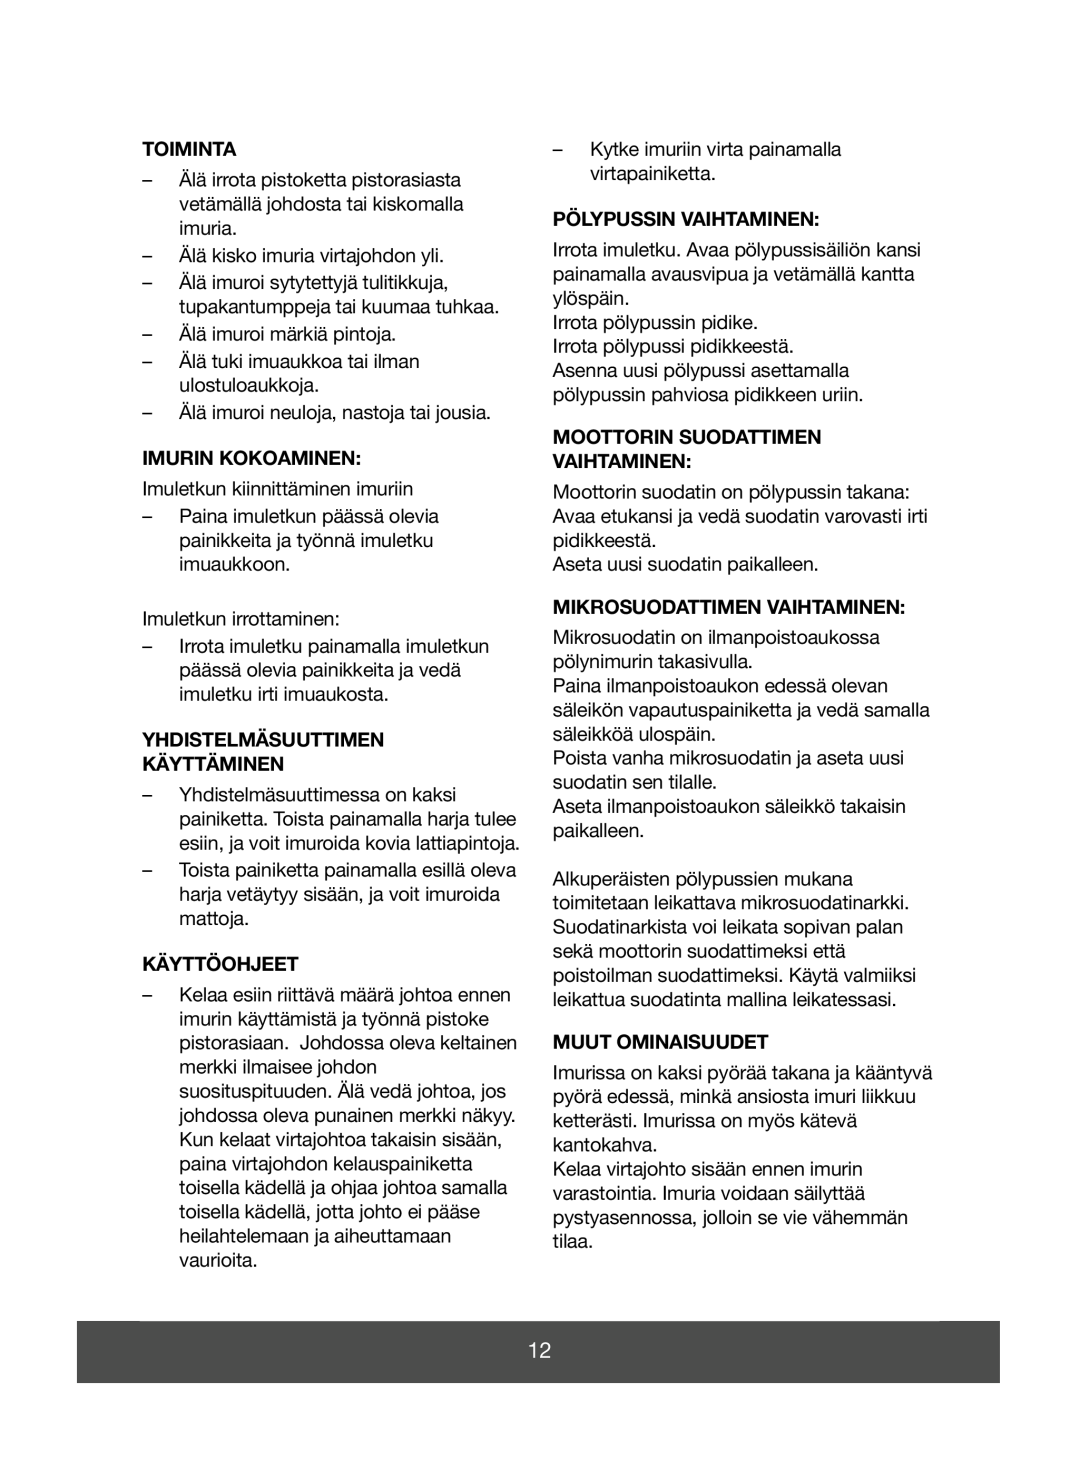 Melissa 640-045 manual Toiminta, Imurin Kokoaminen, Yhdistelmäsuuttimen Käyttäminen, Käyttöohjeet, Pölypussin Vaihtaminen 